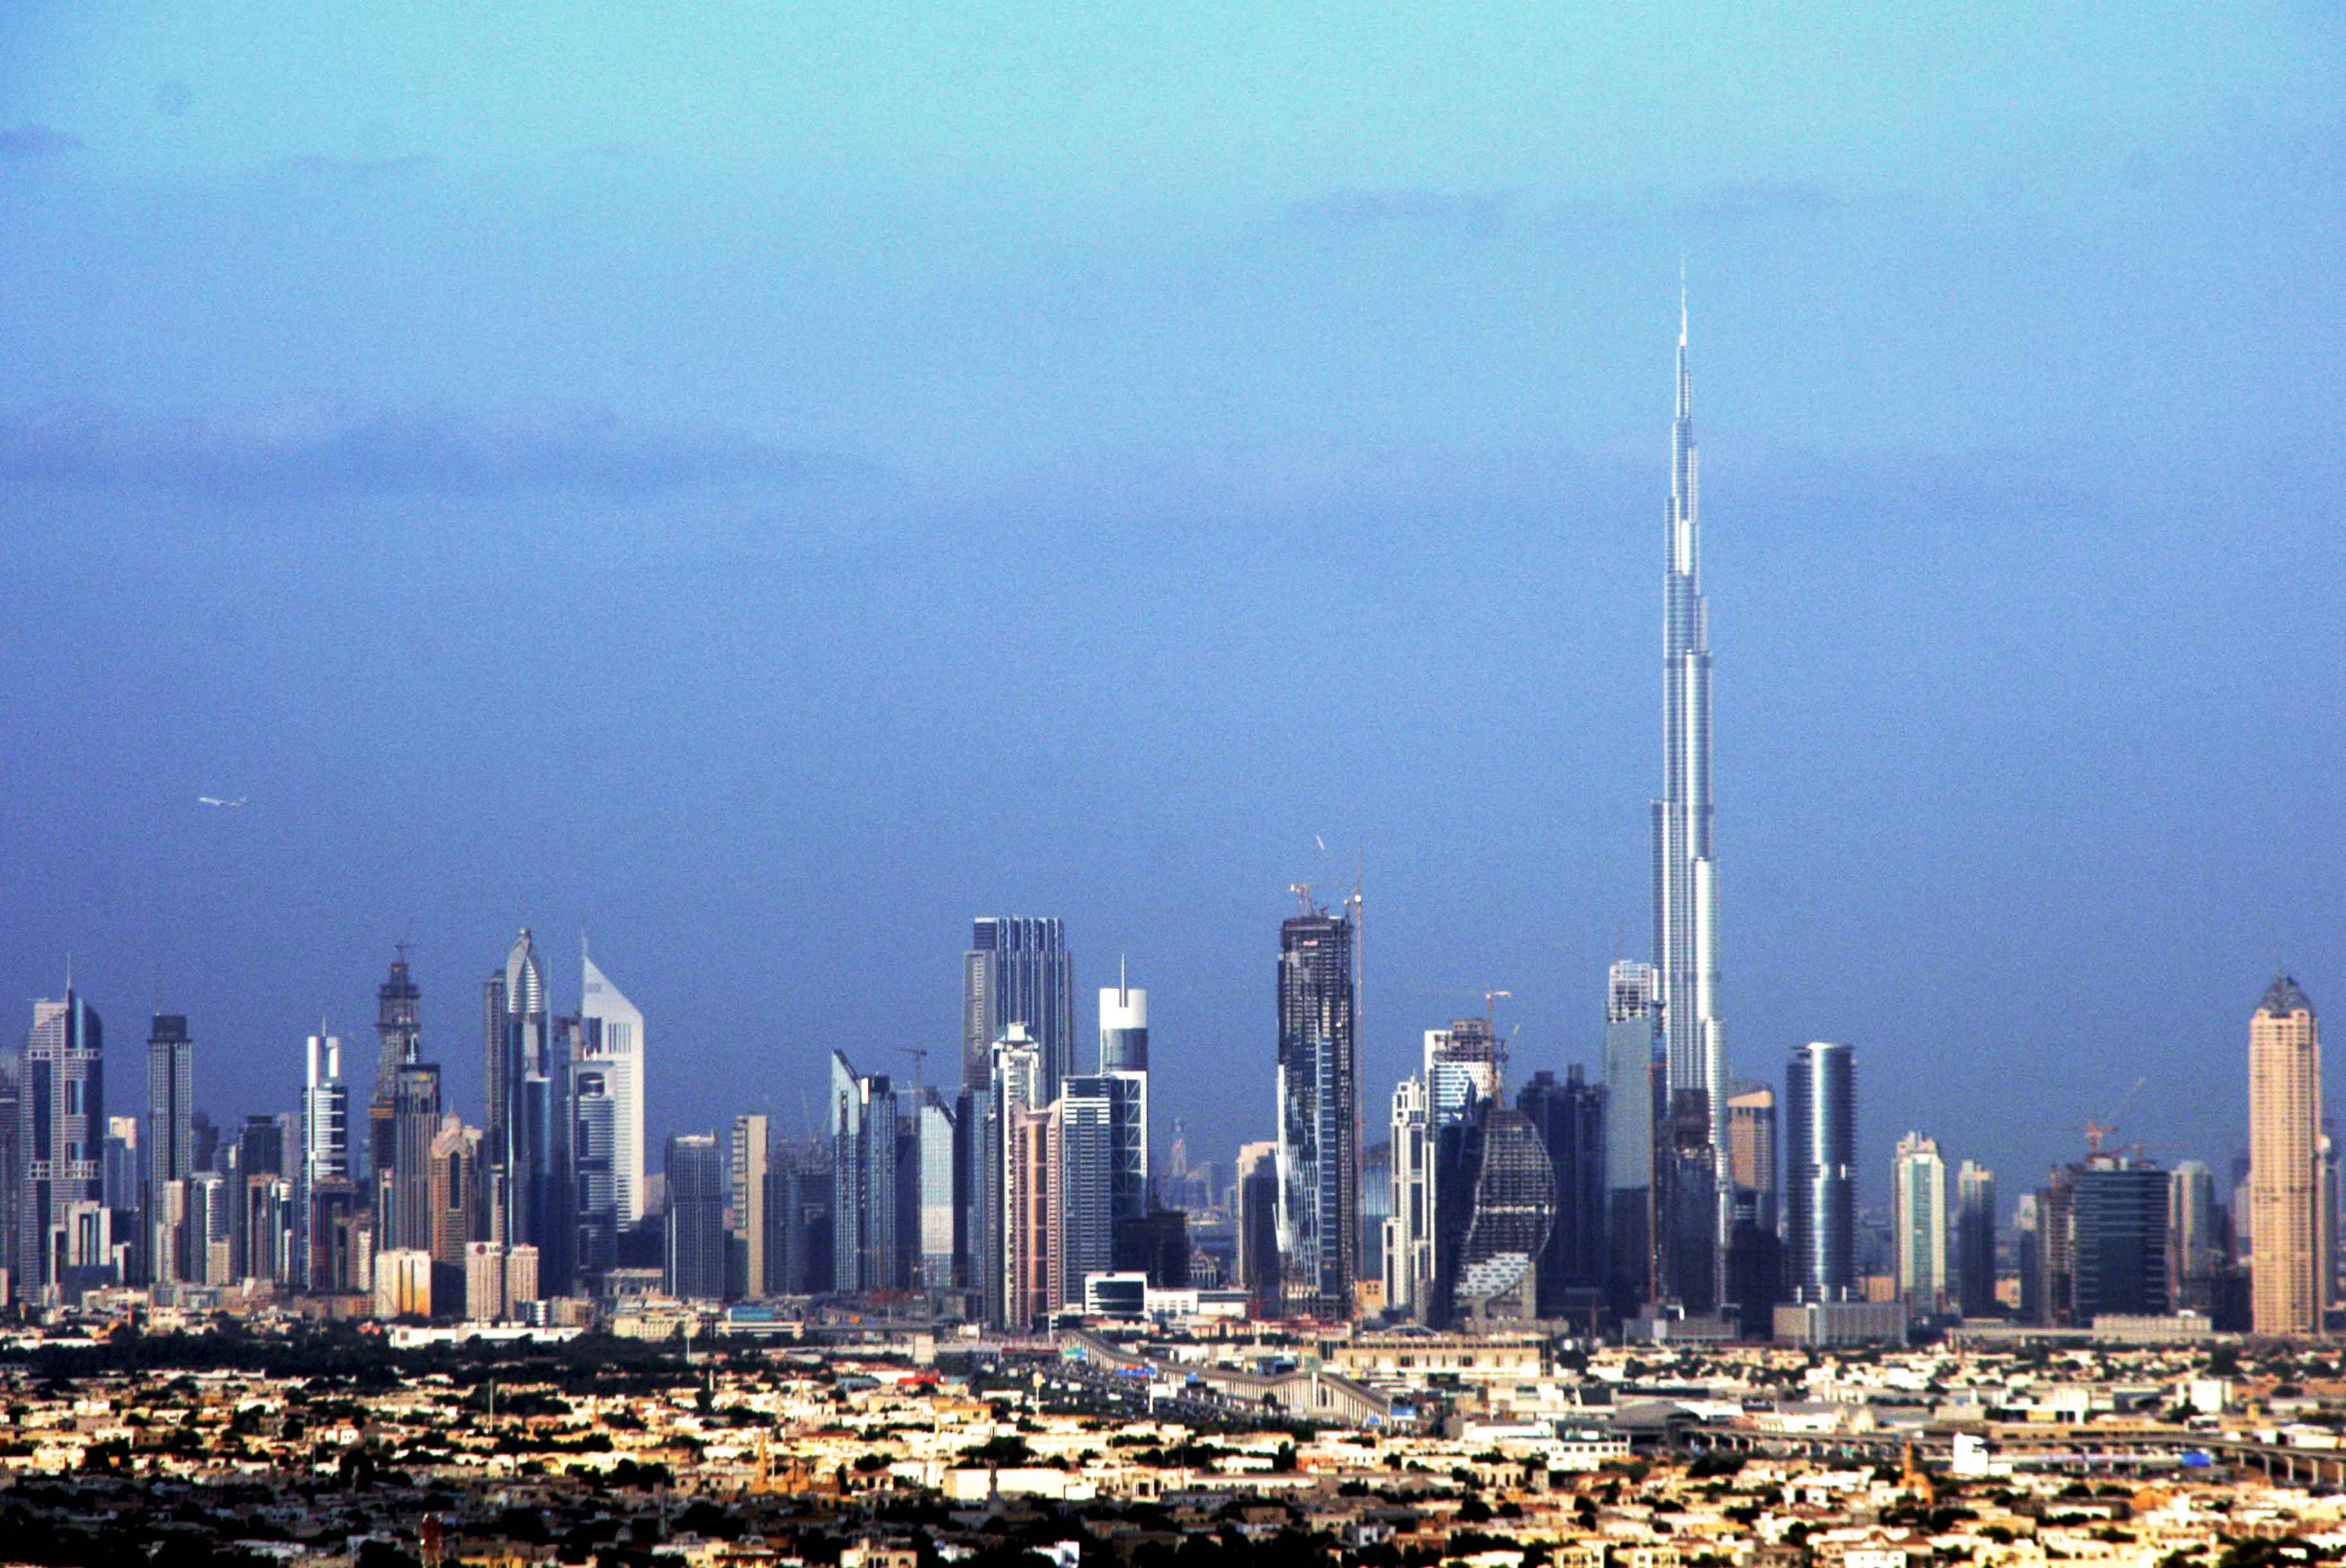 Top Dubei Skyline Images for Pinterest